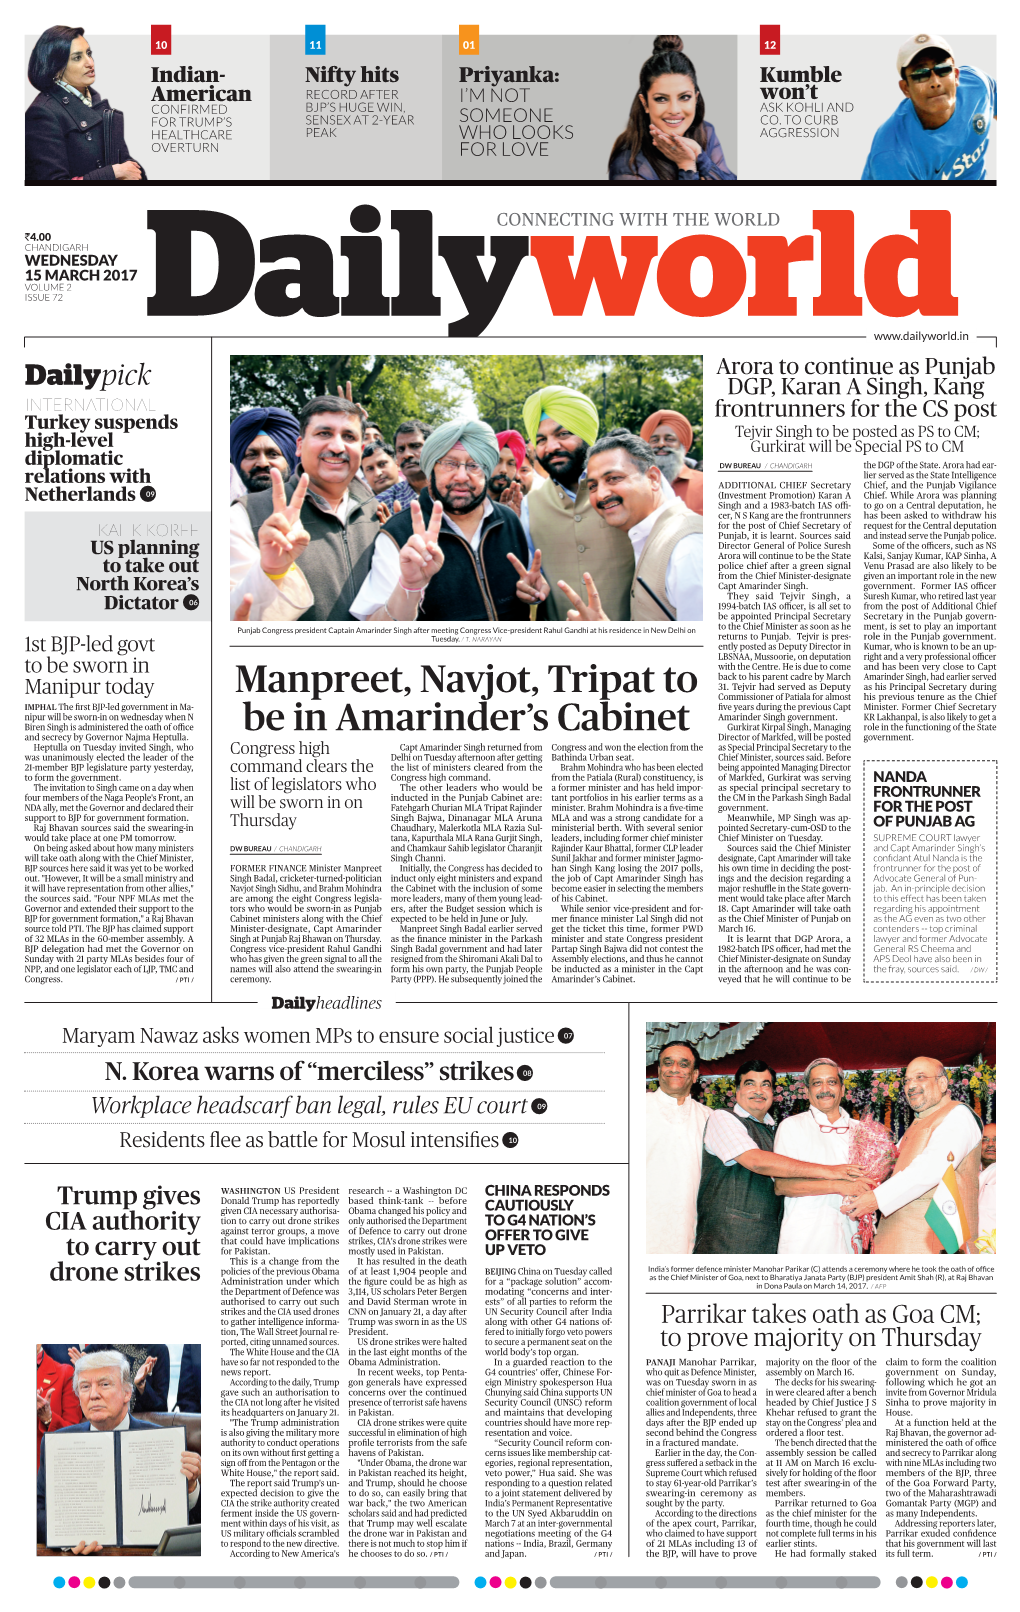 Manpreet, Navjot, Tripat to Be in Amarinder's Cabinet